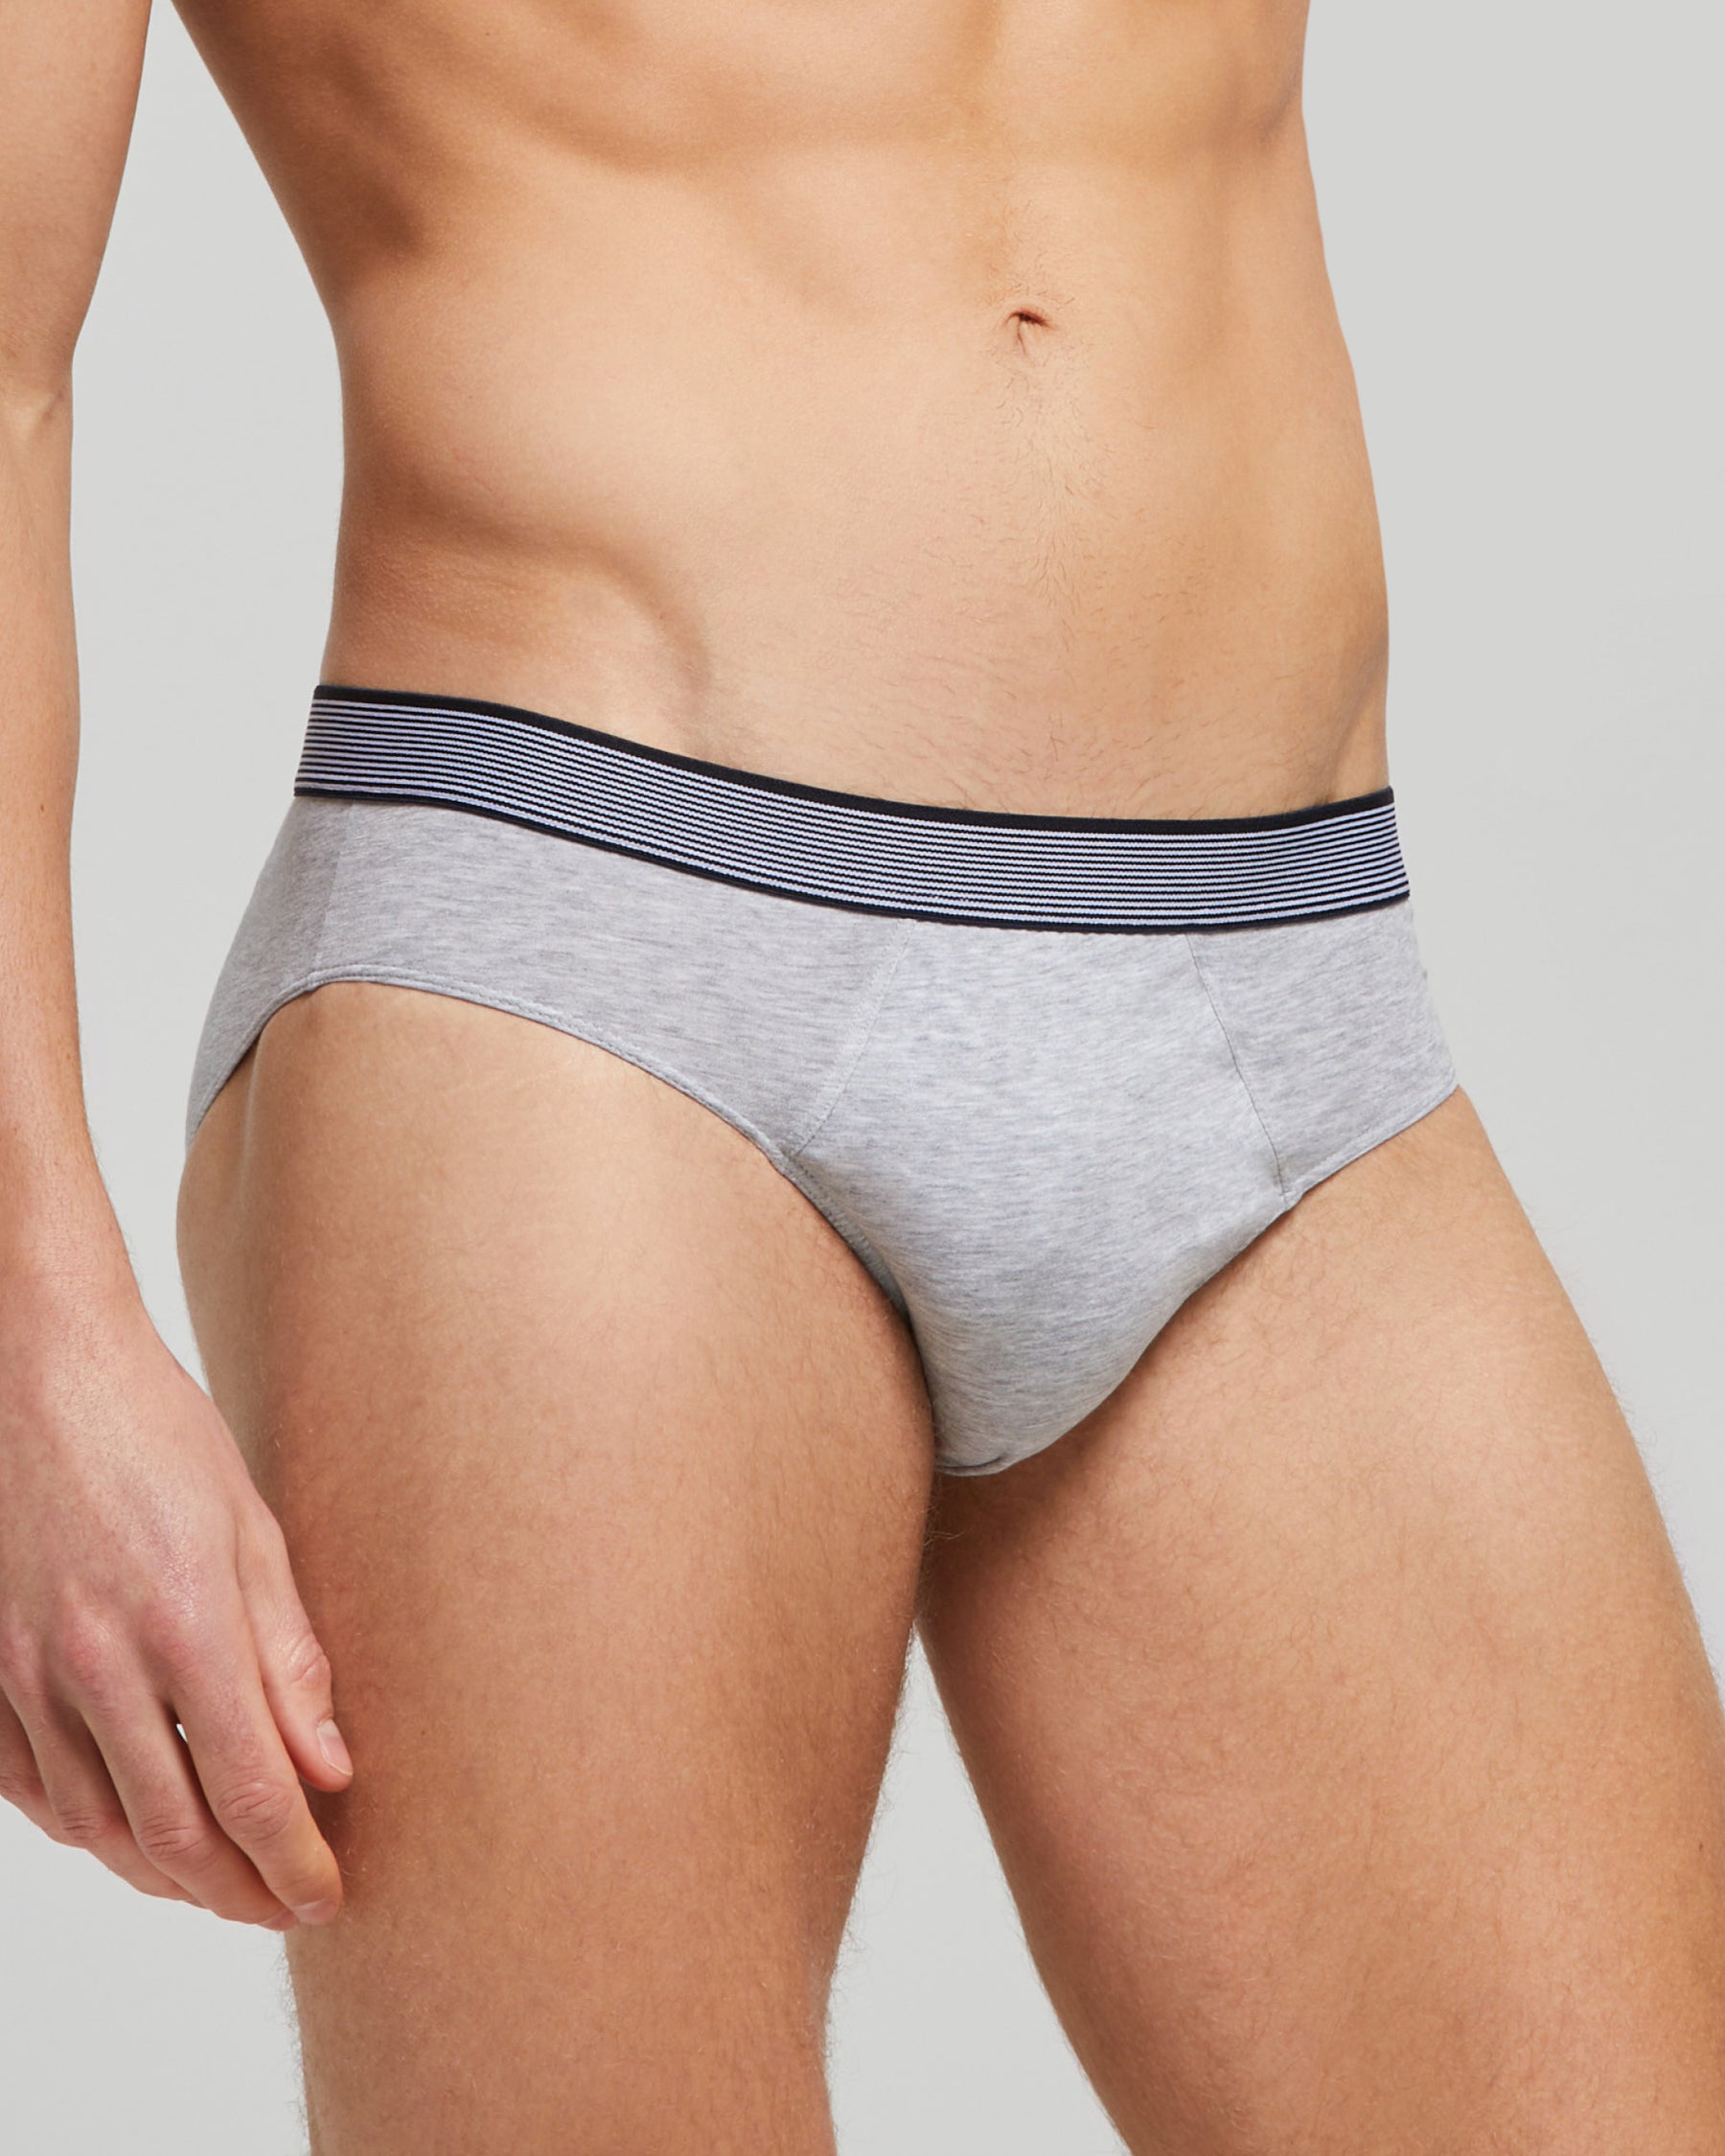 Organic cotton briefs with elasticated waistband, melange grey, Men's  Underwear